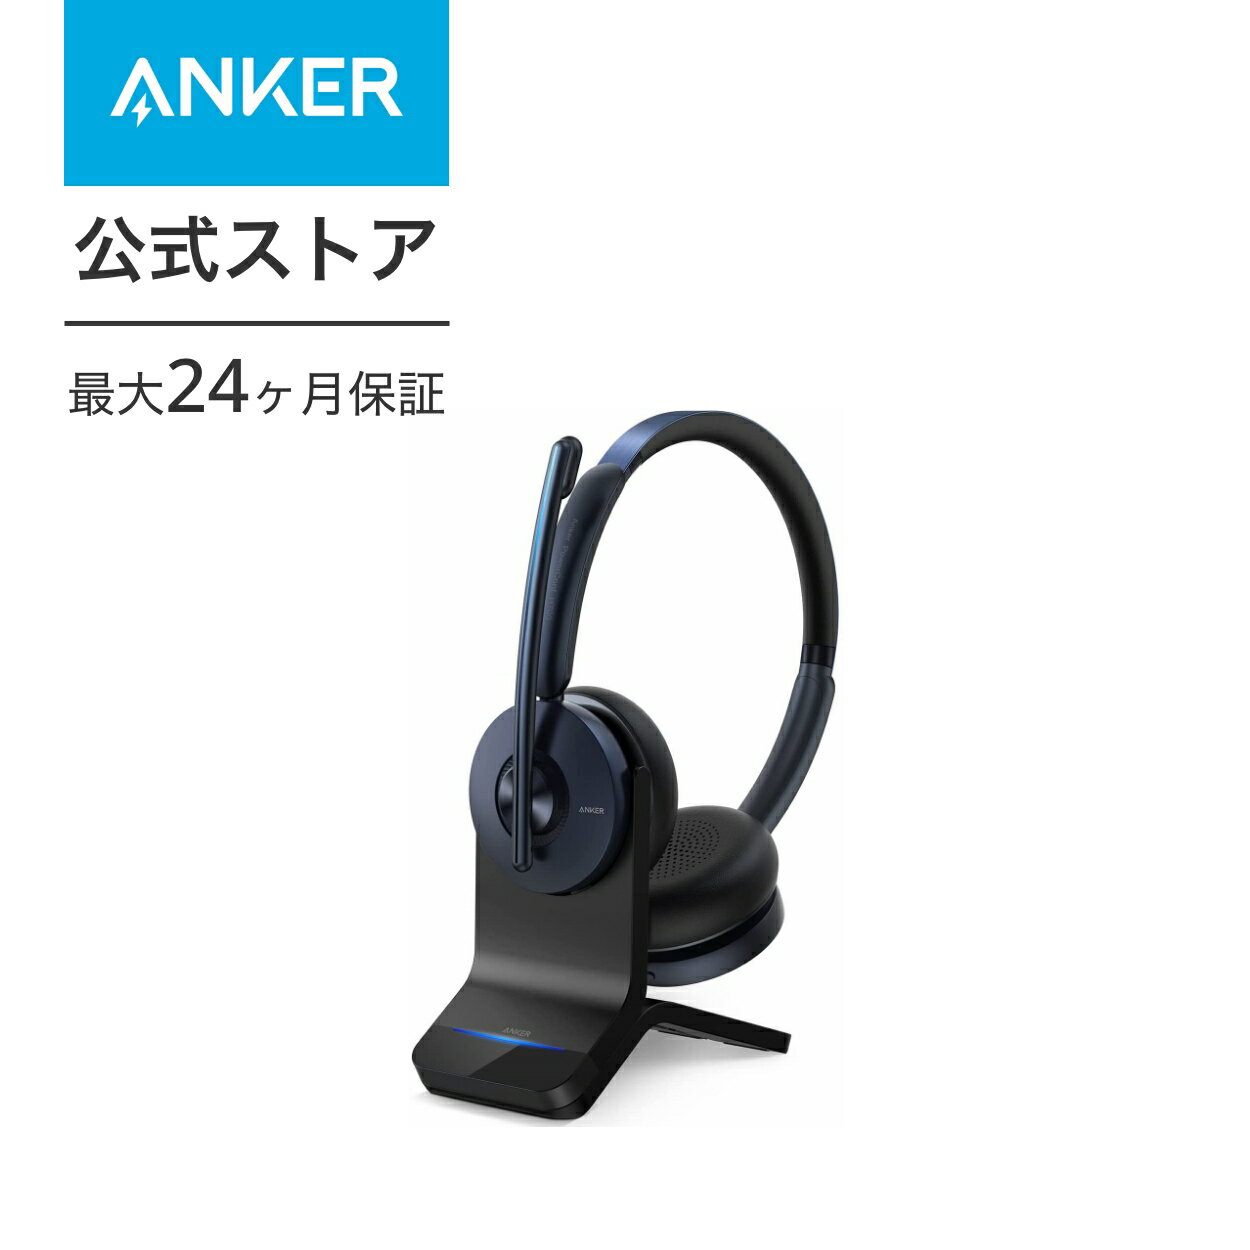 【あす楽対応】Anker PowerConf H700（ワイヤレスヘッドセット Bluetooth 5.0）充電スタンド付属【パソコン用 / Web会議 / 通話ノイズリダクション / マイク搭載 / アクティブノイズキャンセリング】